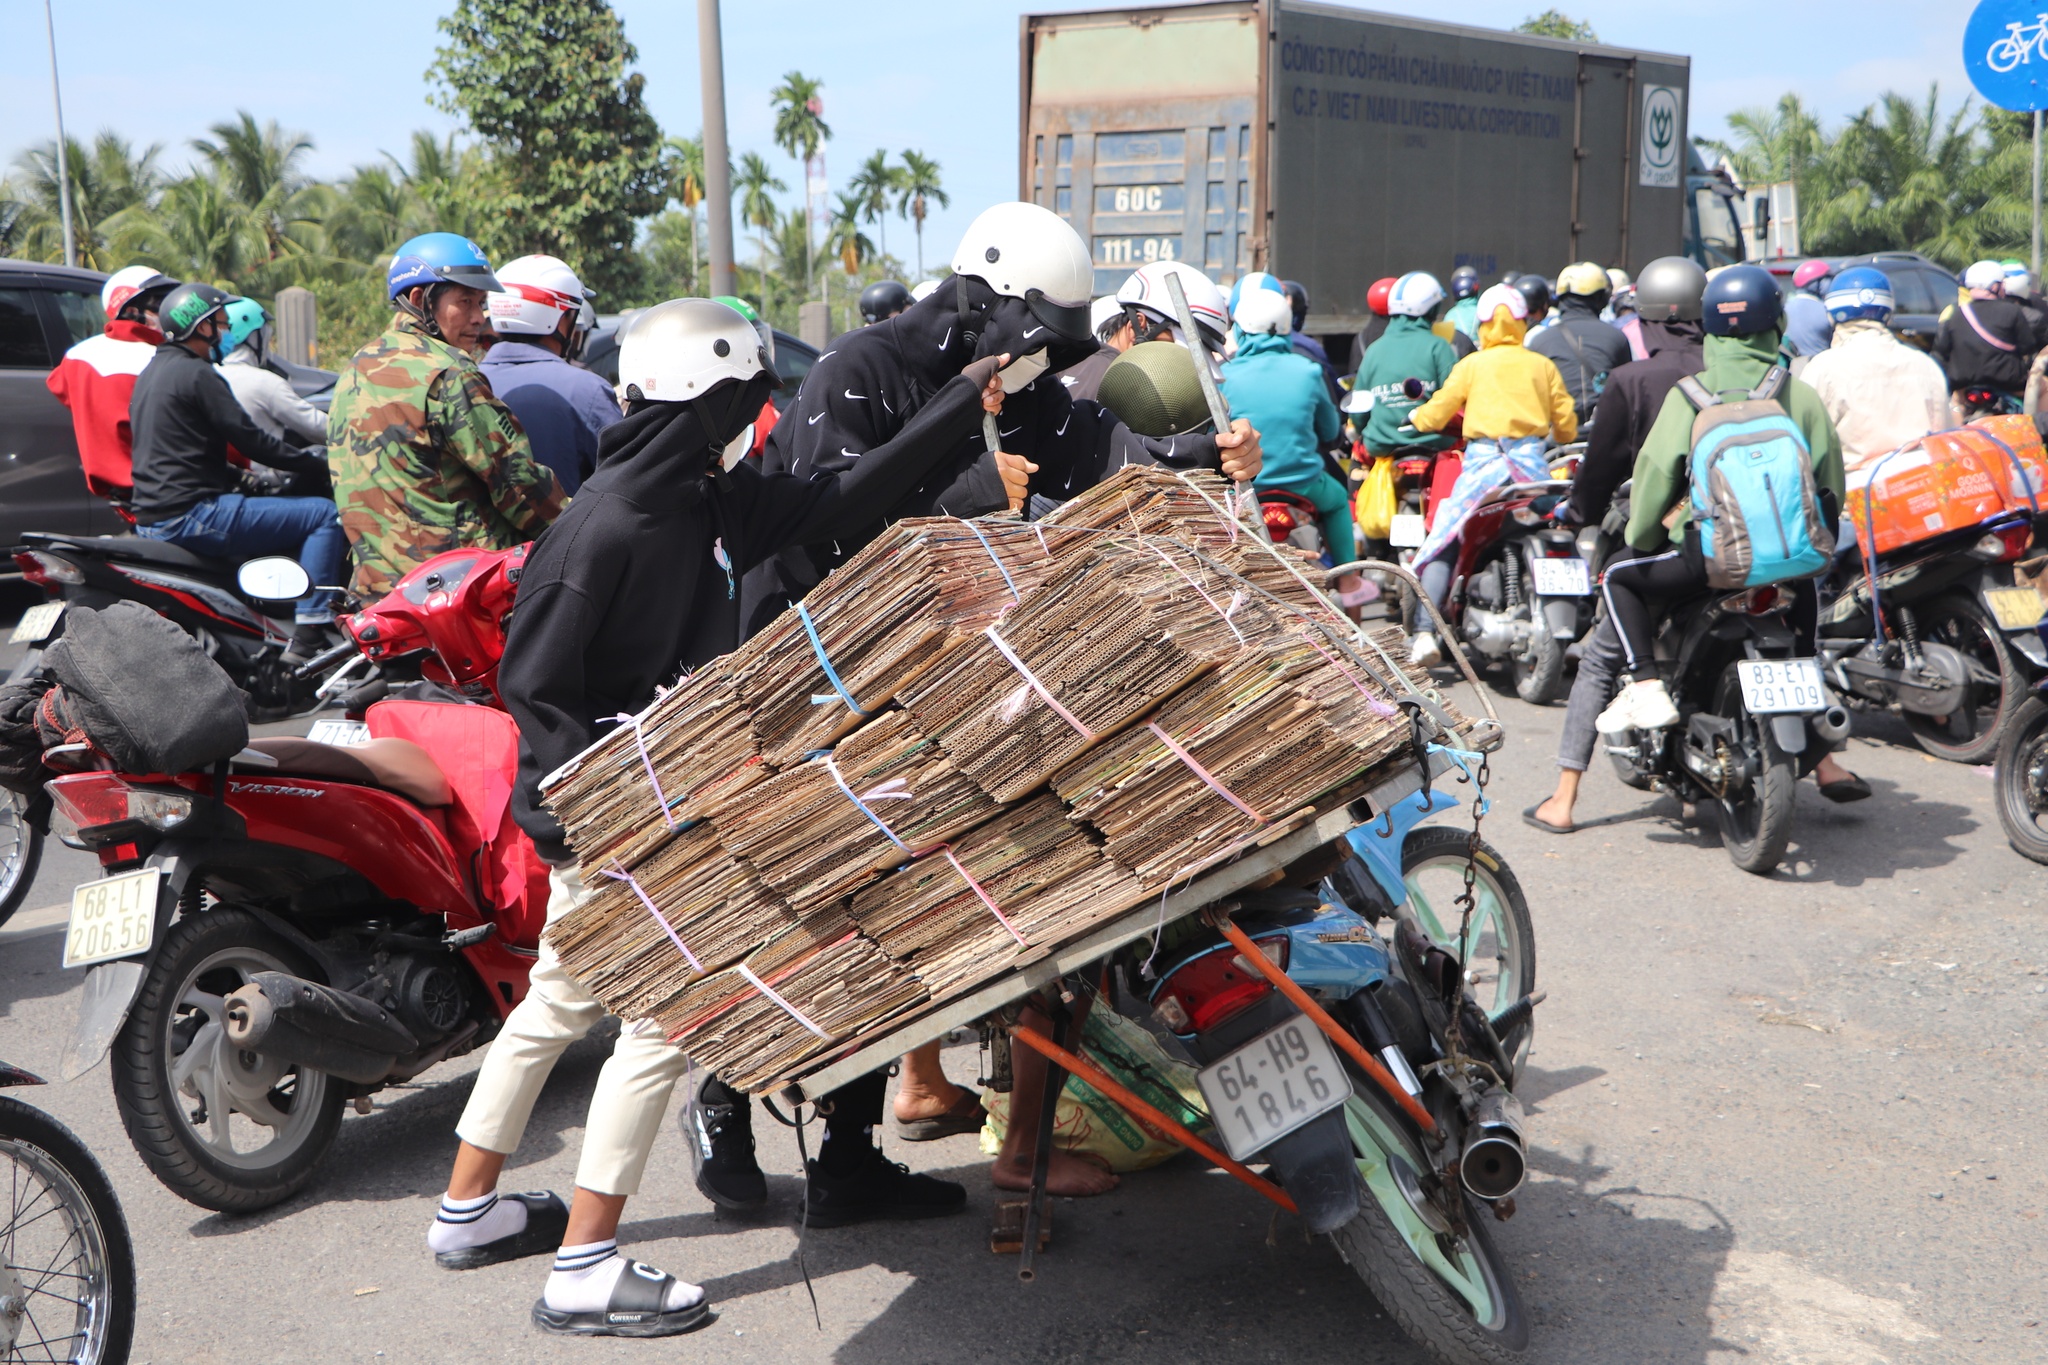 Trở lại TP.HCM làm việc sau tết: Mệt lả người vì kẹt xe ở cầu Mỹ Thuận - ảnh 7